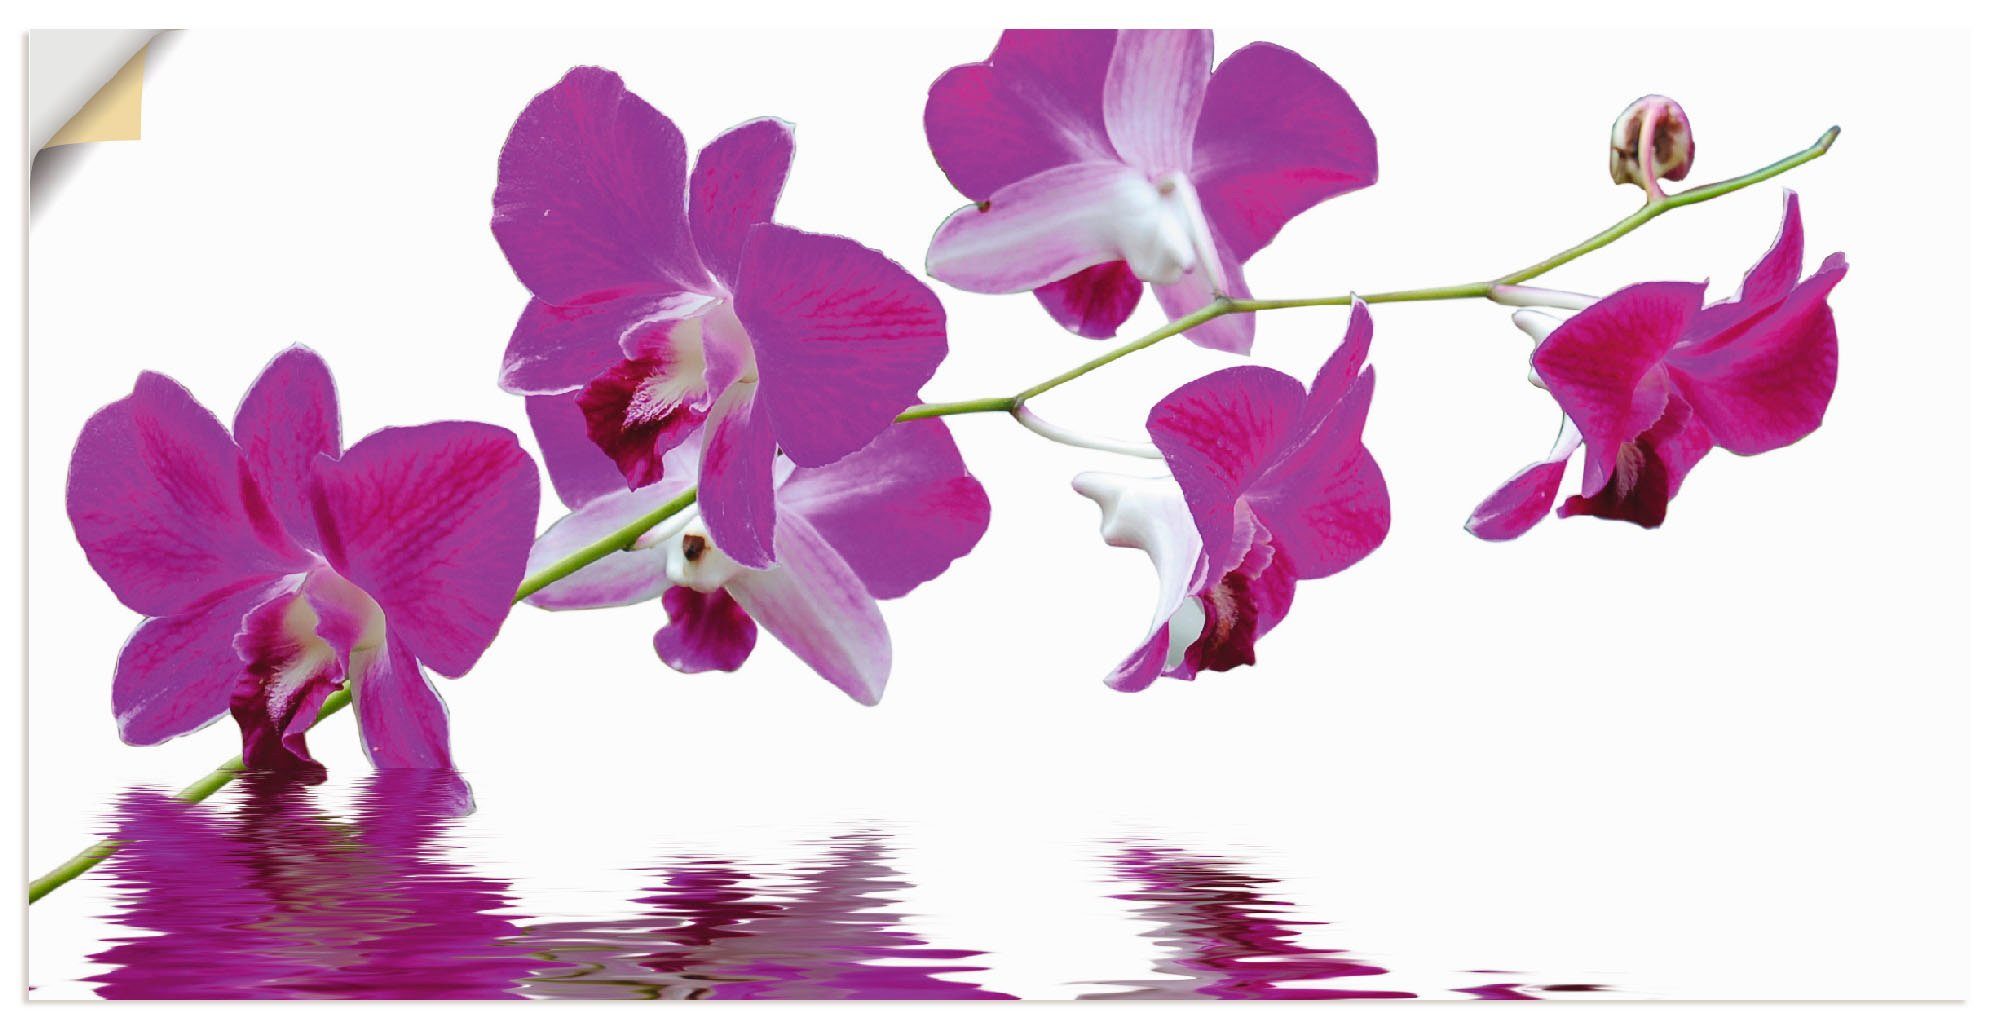 Artland Artprint Violette orchideeën in vele afmetingen & productsoorten -artprint op linnen, poster, muursticker / wandfolie ook geschikt voor de badkamer (1 stuk)